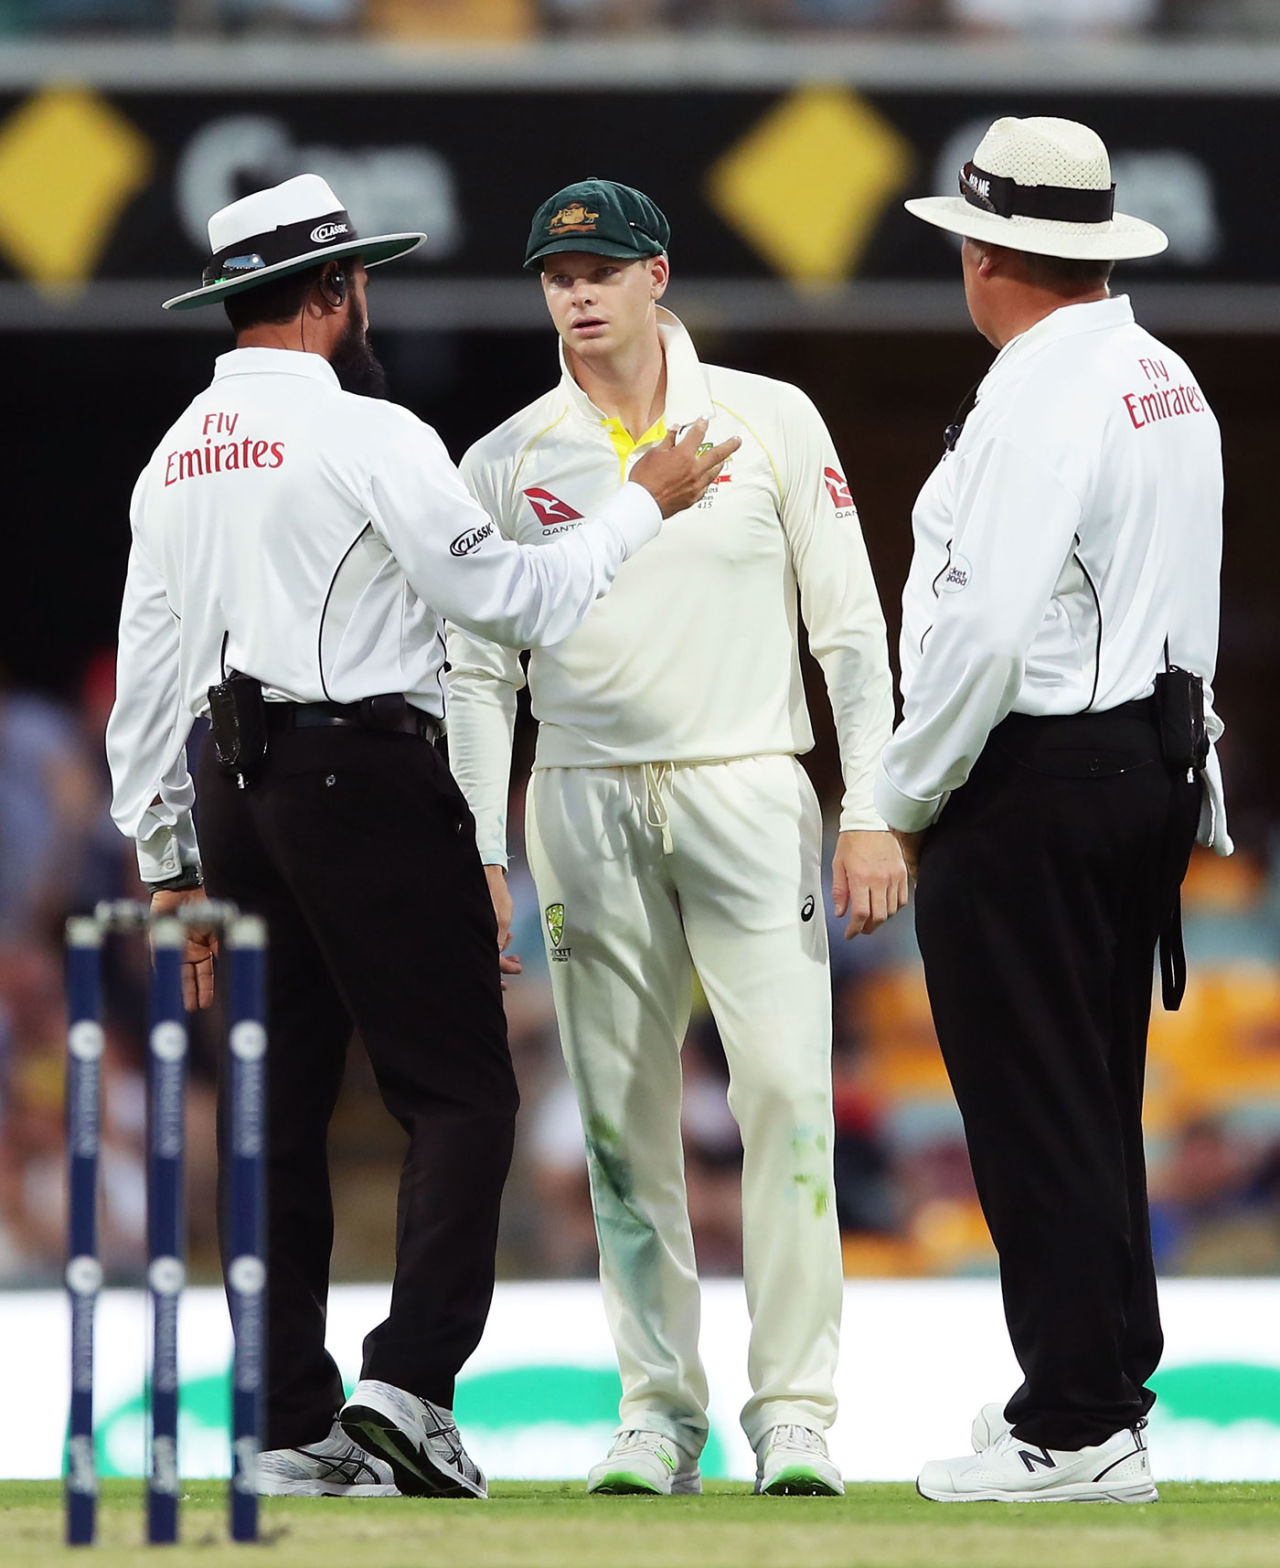 The umpires explain their bad-light call to Steven Smith, Australia v England, 1st Test, The Ashes 2017-18, 1st day, Brisbane, November 23, 2017